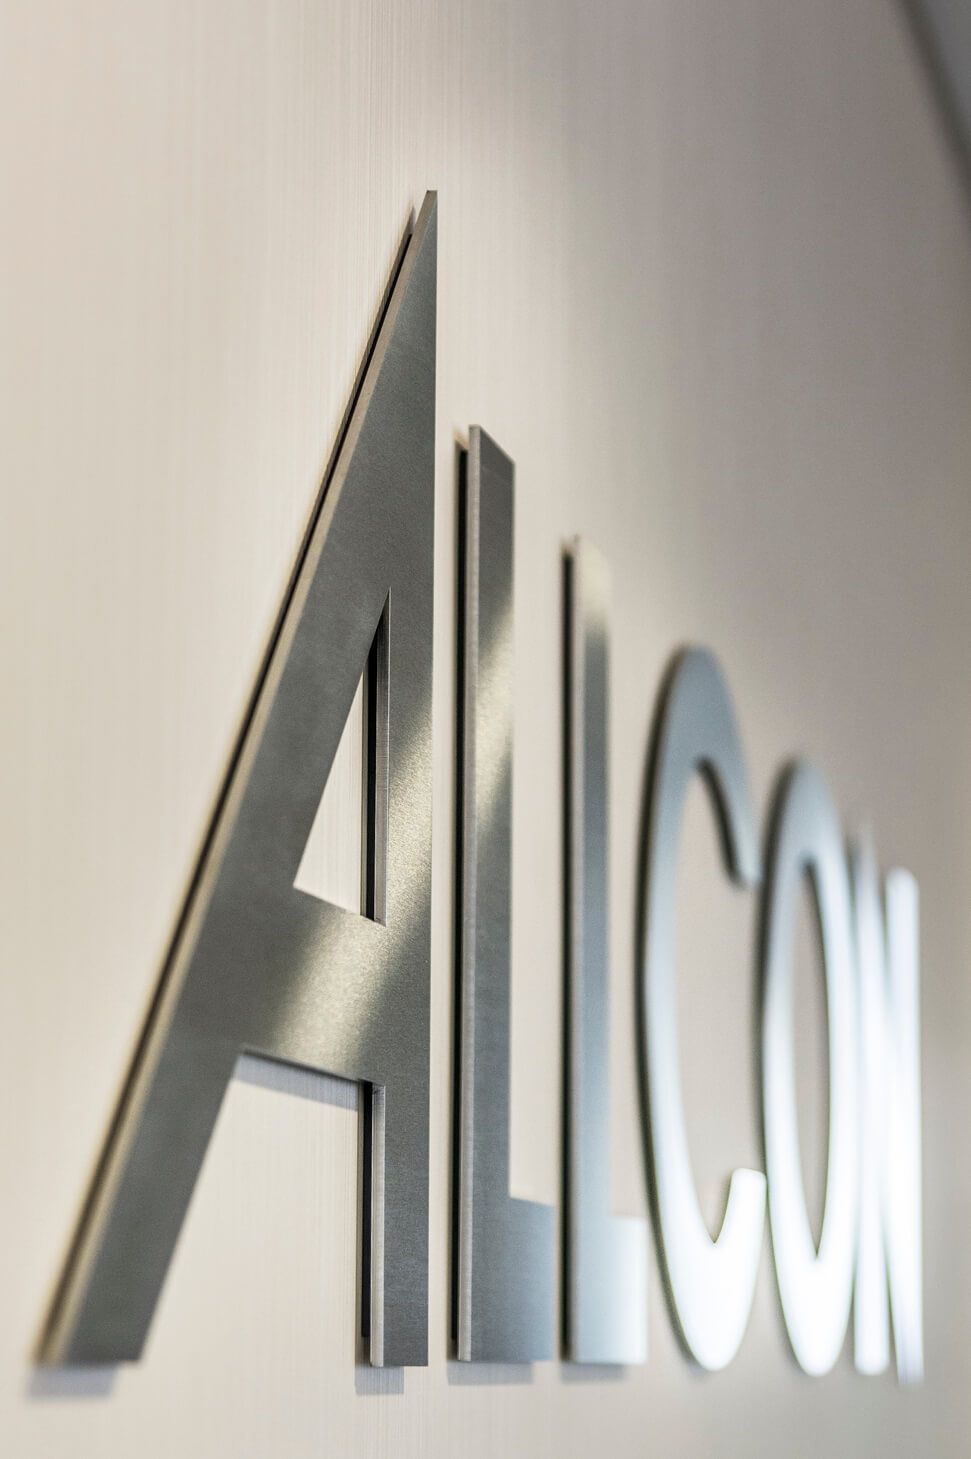 Allcon - Allcon - przestrzenne litery metalowe